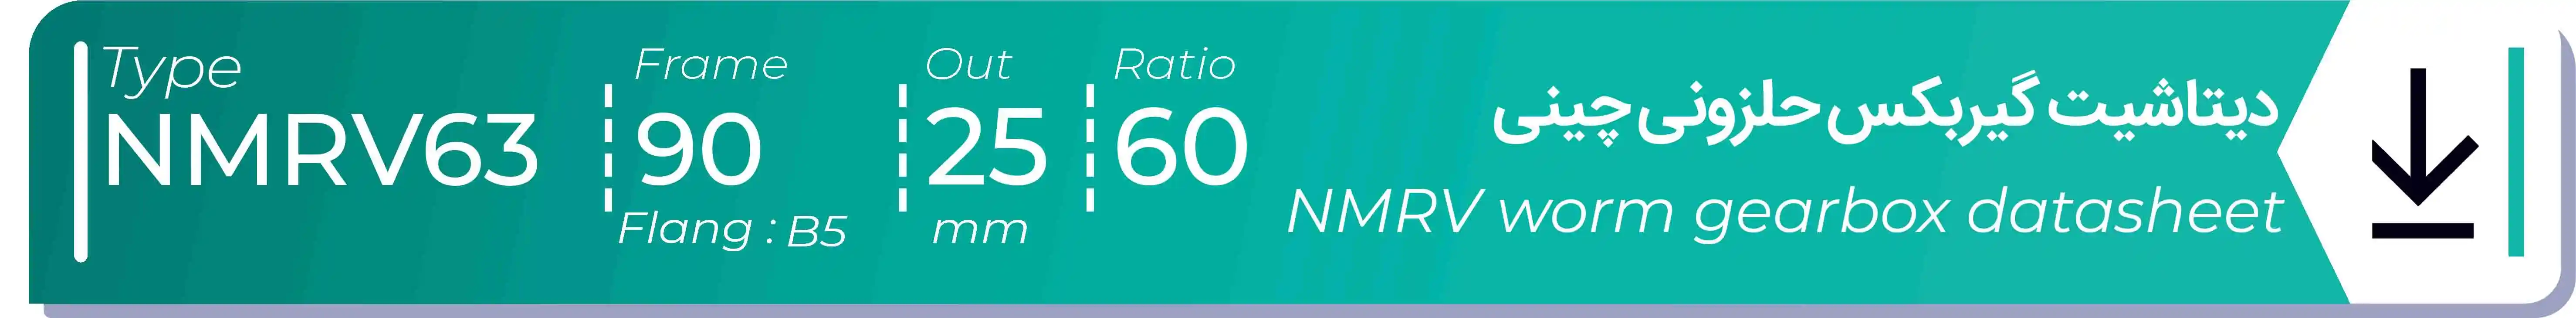  دیتاشیت و مشخصات فنی گیربکس حلزونی چینی   NMRV63  -  با خروجی 25- میلی متر و نسبت60 و فریم 90